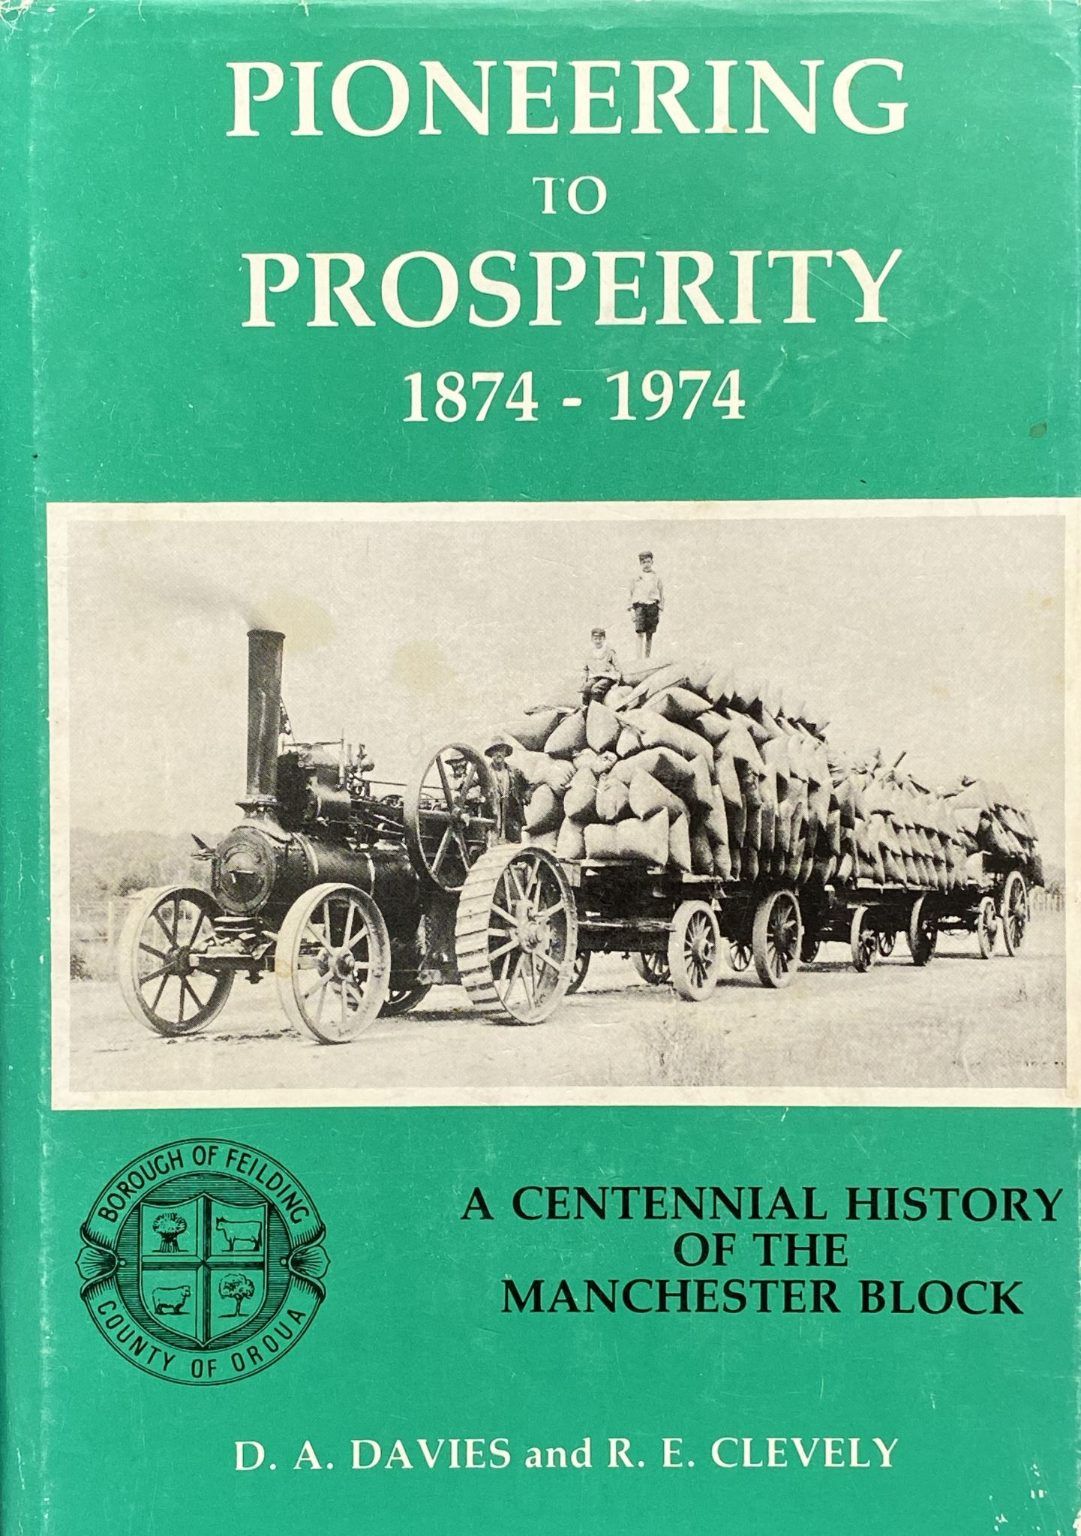 PIONEERING TO PROSPERITY 1874 - 1974